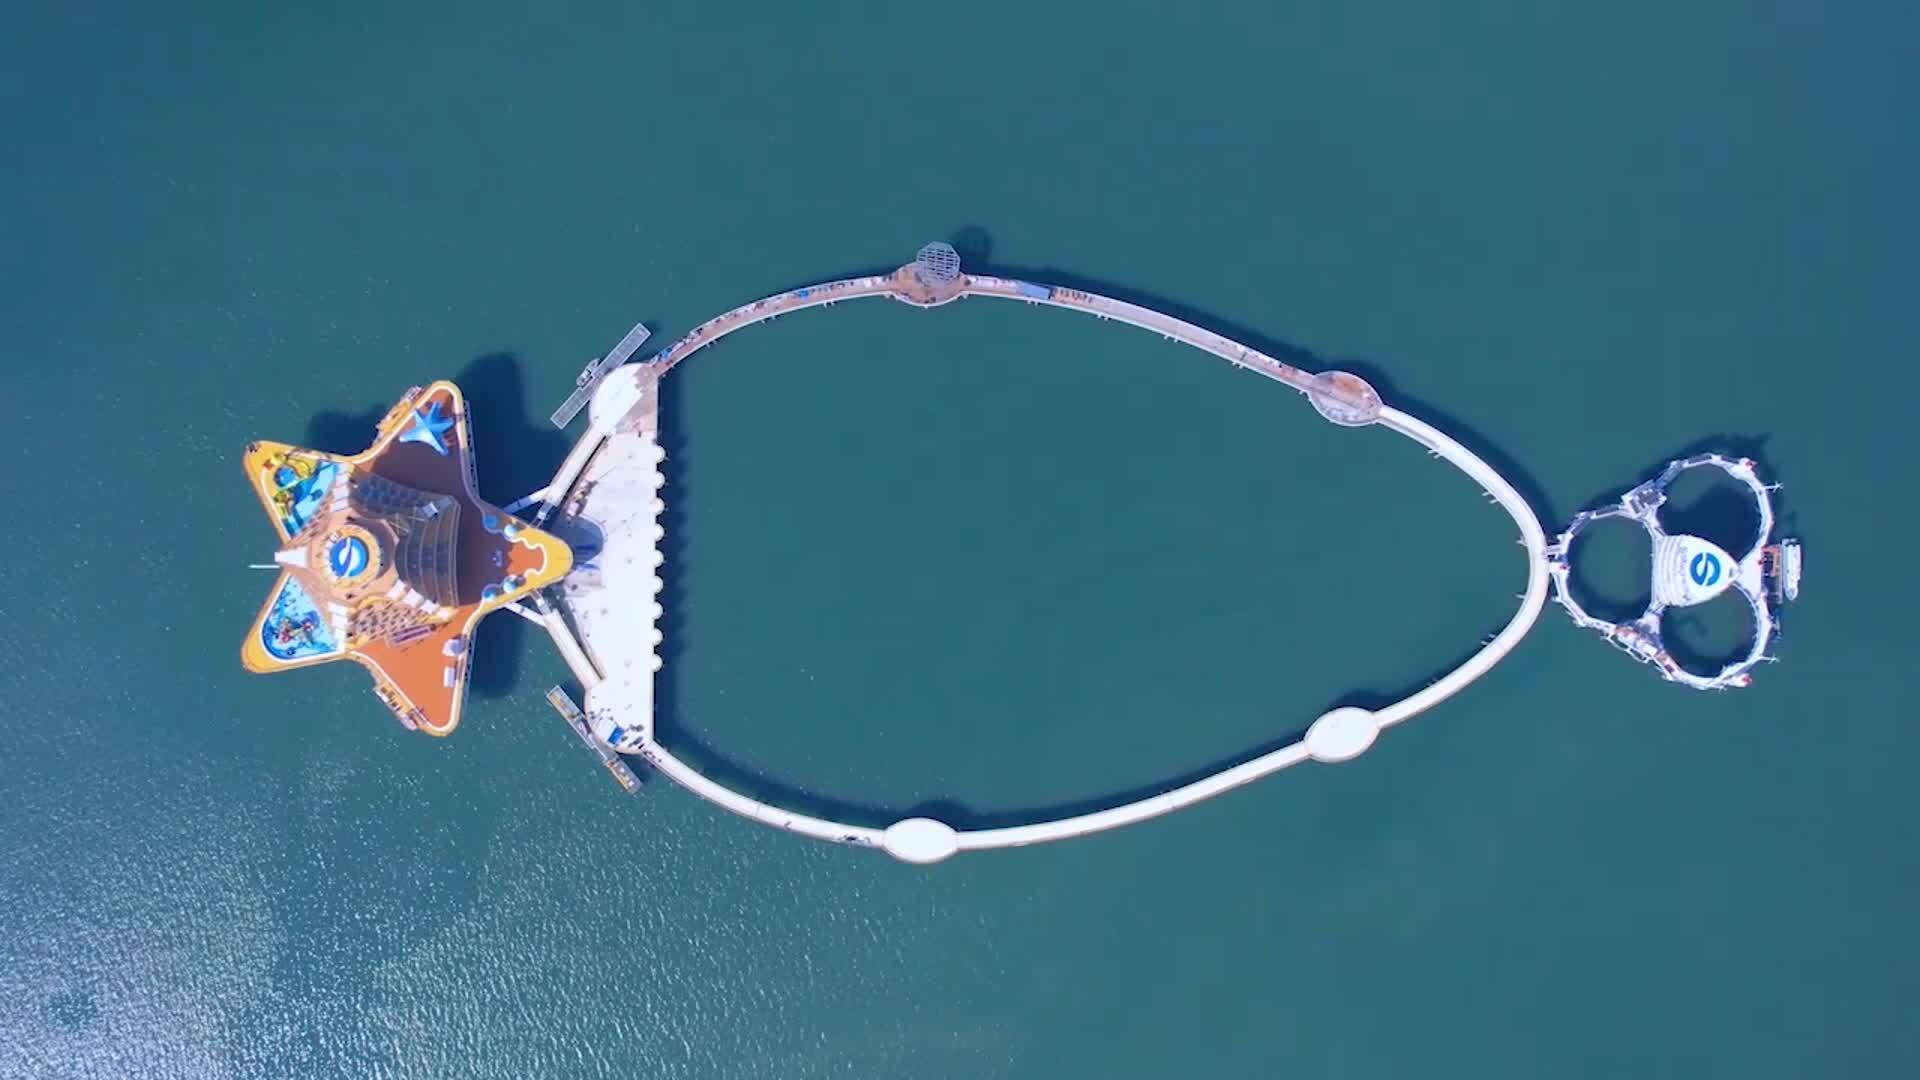 山东海域镶了一条“宝石项链” 科技范海洋牧场让你在海上跑步垂钓 一站式观光旅游